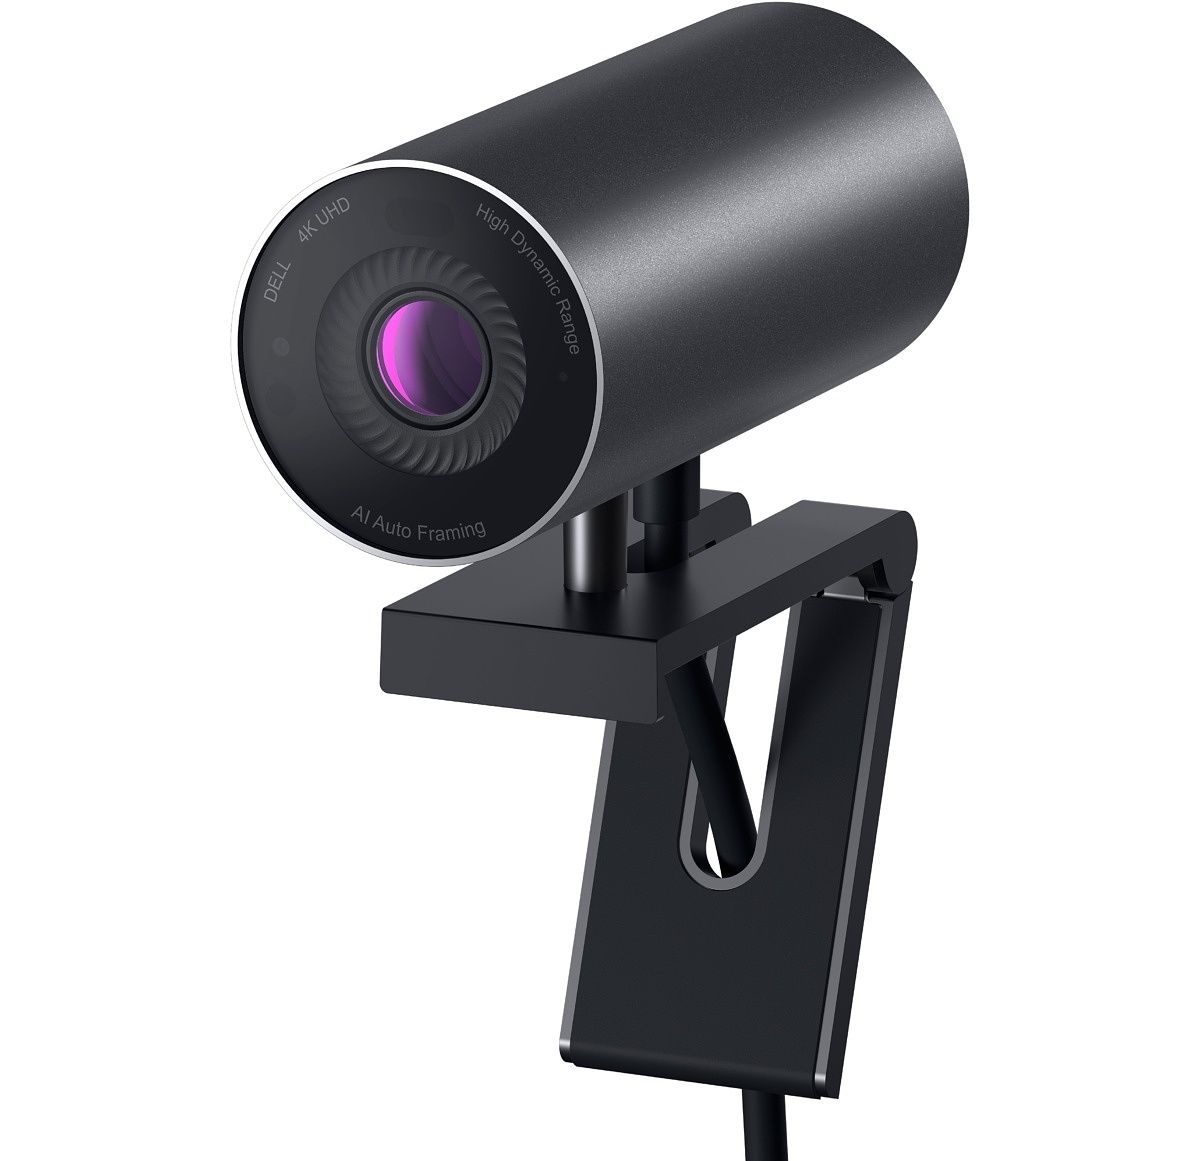 Das XPS 17 hat eine ziemlich schlechte Webcam, also wirst du dir eine bessere Kamera wünschen, wenn du vorhast, Videoanrufe anzunehmen oder online zu streamen.  Die Dell UltraSharp ist möglicherweise die beste Webcam auf dem Markt, mit einem 4K-Sony-STARVIS-Sensor für schwaches Licht, Autofokus und anderen großartigen Funktionen.